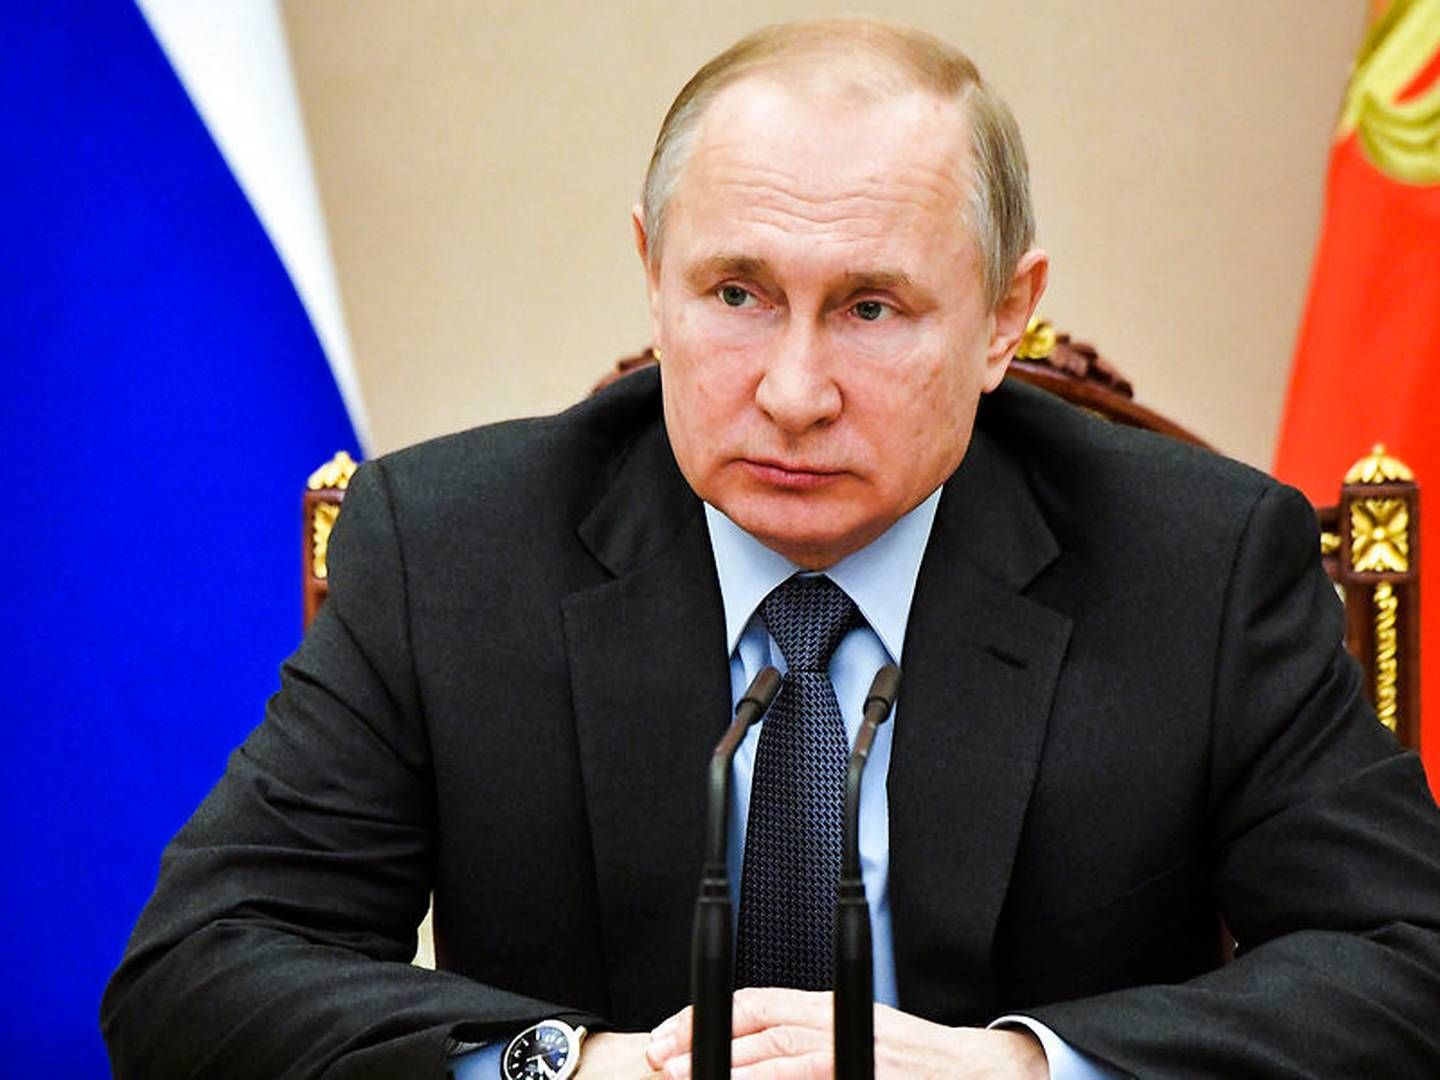 Den russiske præsident, Vladimir Putin, stod bag annekteringen af Krim i 2014, som siden førte til sanktioner mod Rusland og derefter et importforbud af fødevarer fra EU. | Foto: Ritzau Scanpix/AP/Alexei Nikolsky